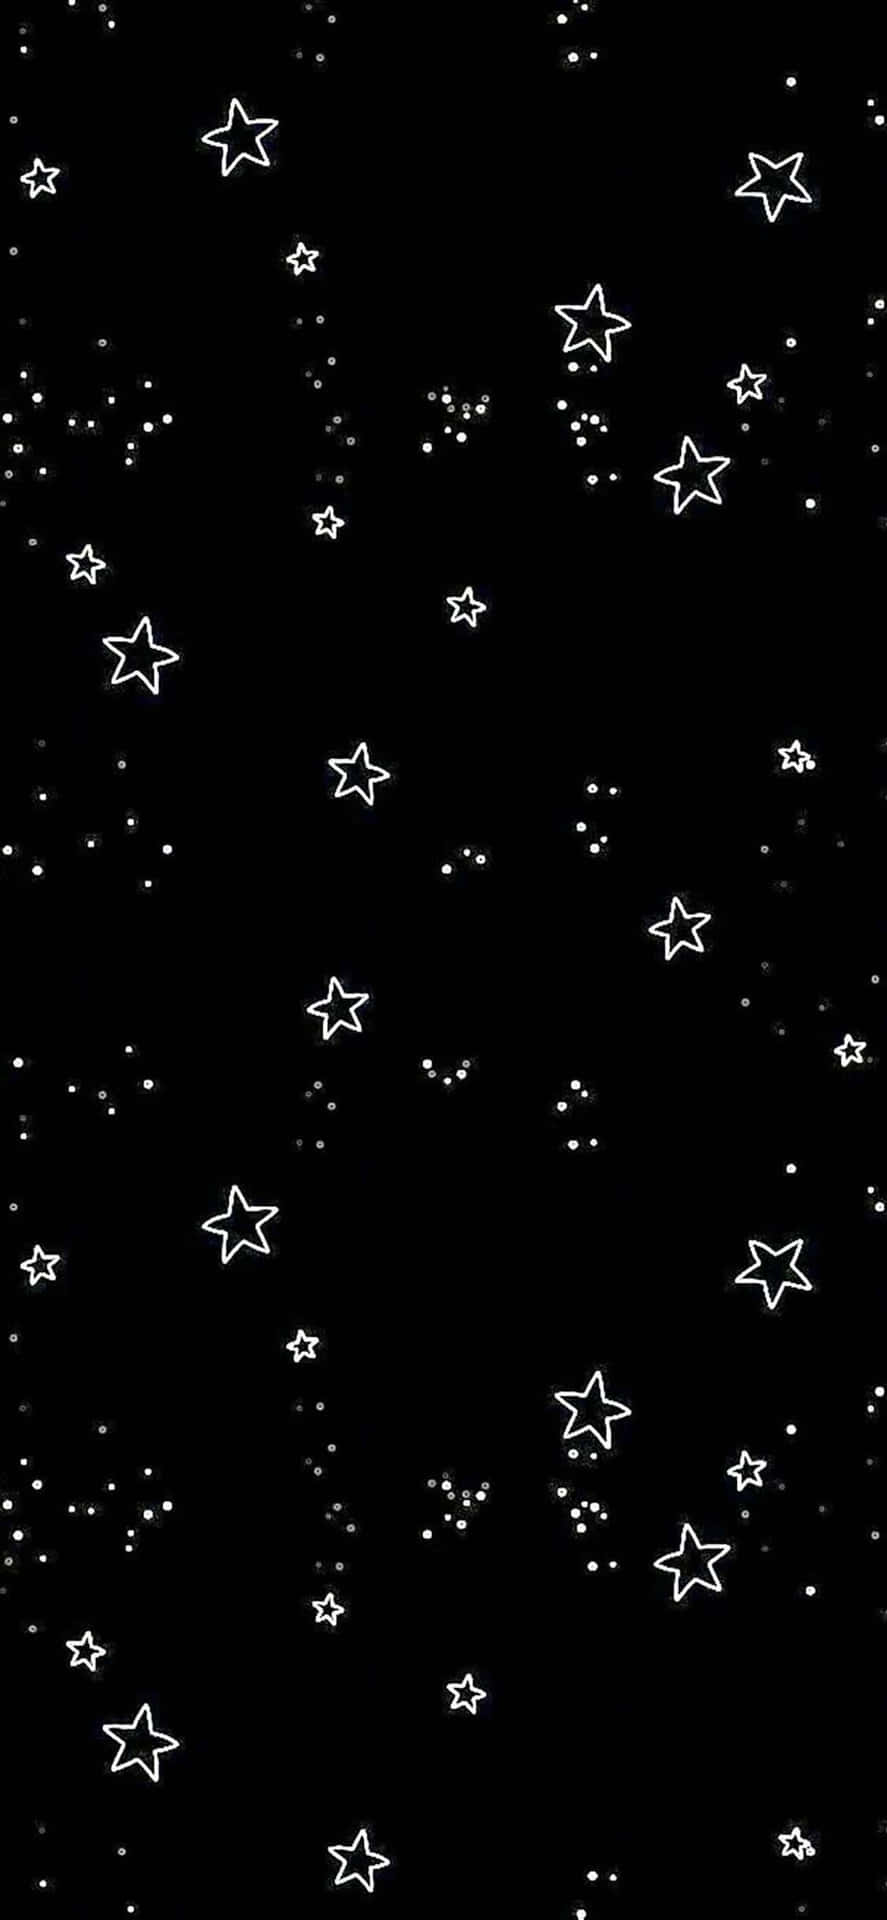 Dreamy night sky of twinkling stars Wallpaper